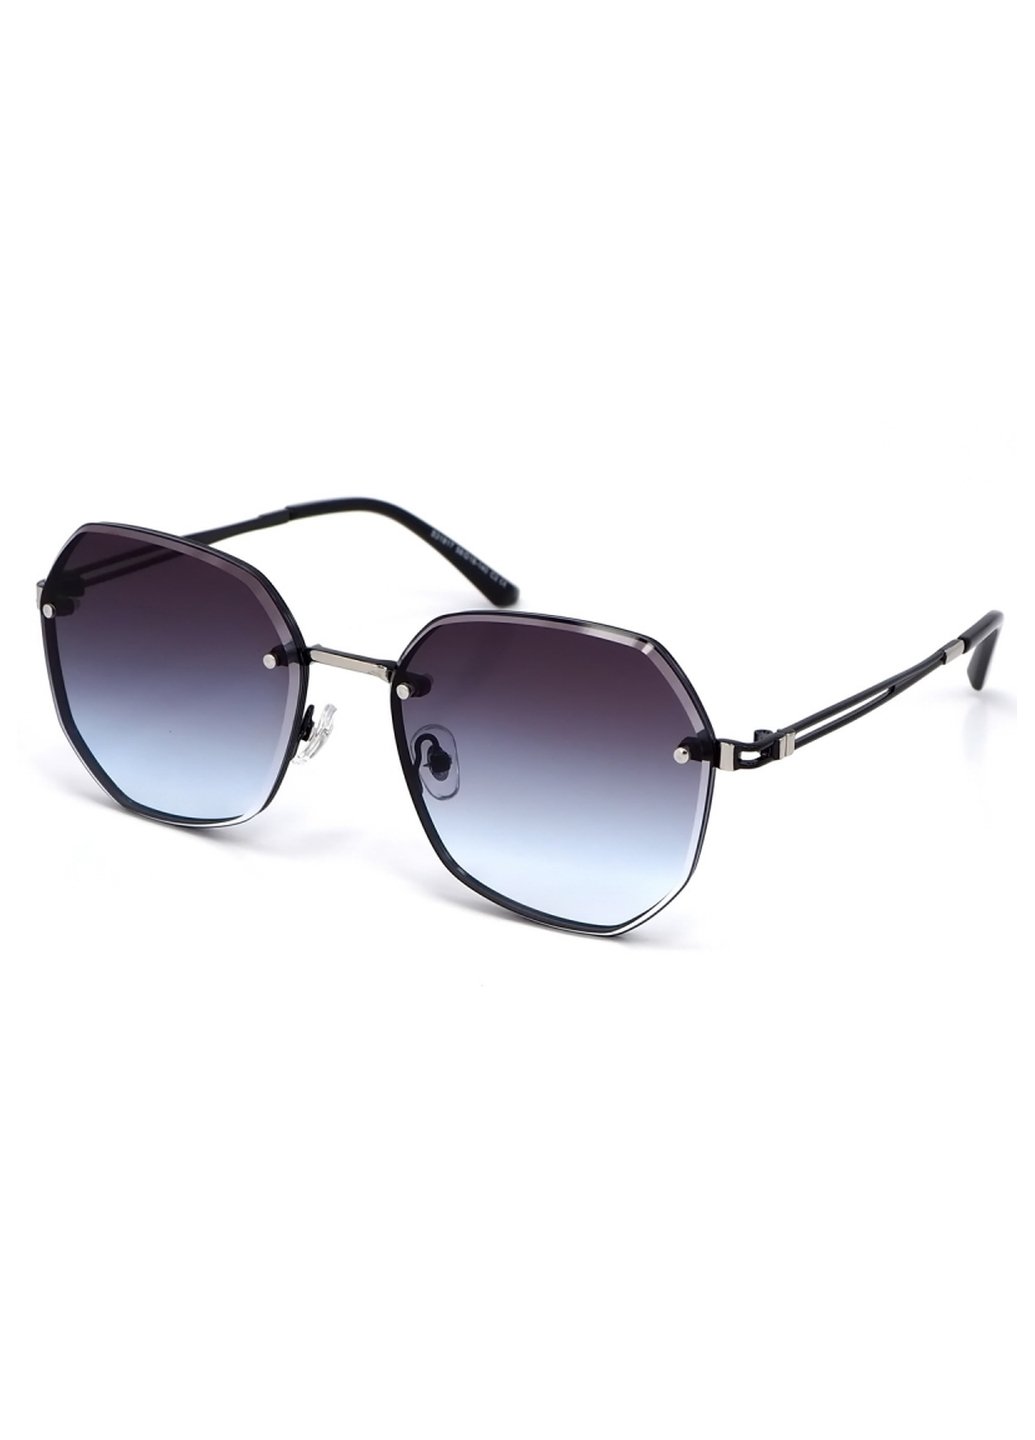 Купить Женские солнцезащитные очки Merlini с поляризацией S31817 117042 - Черный в интернет-магазине